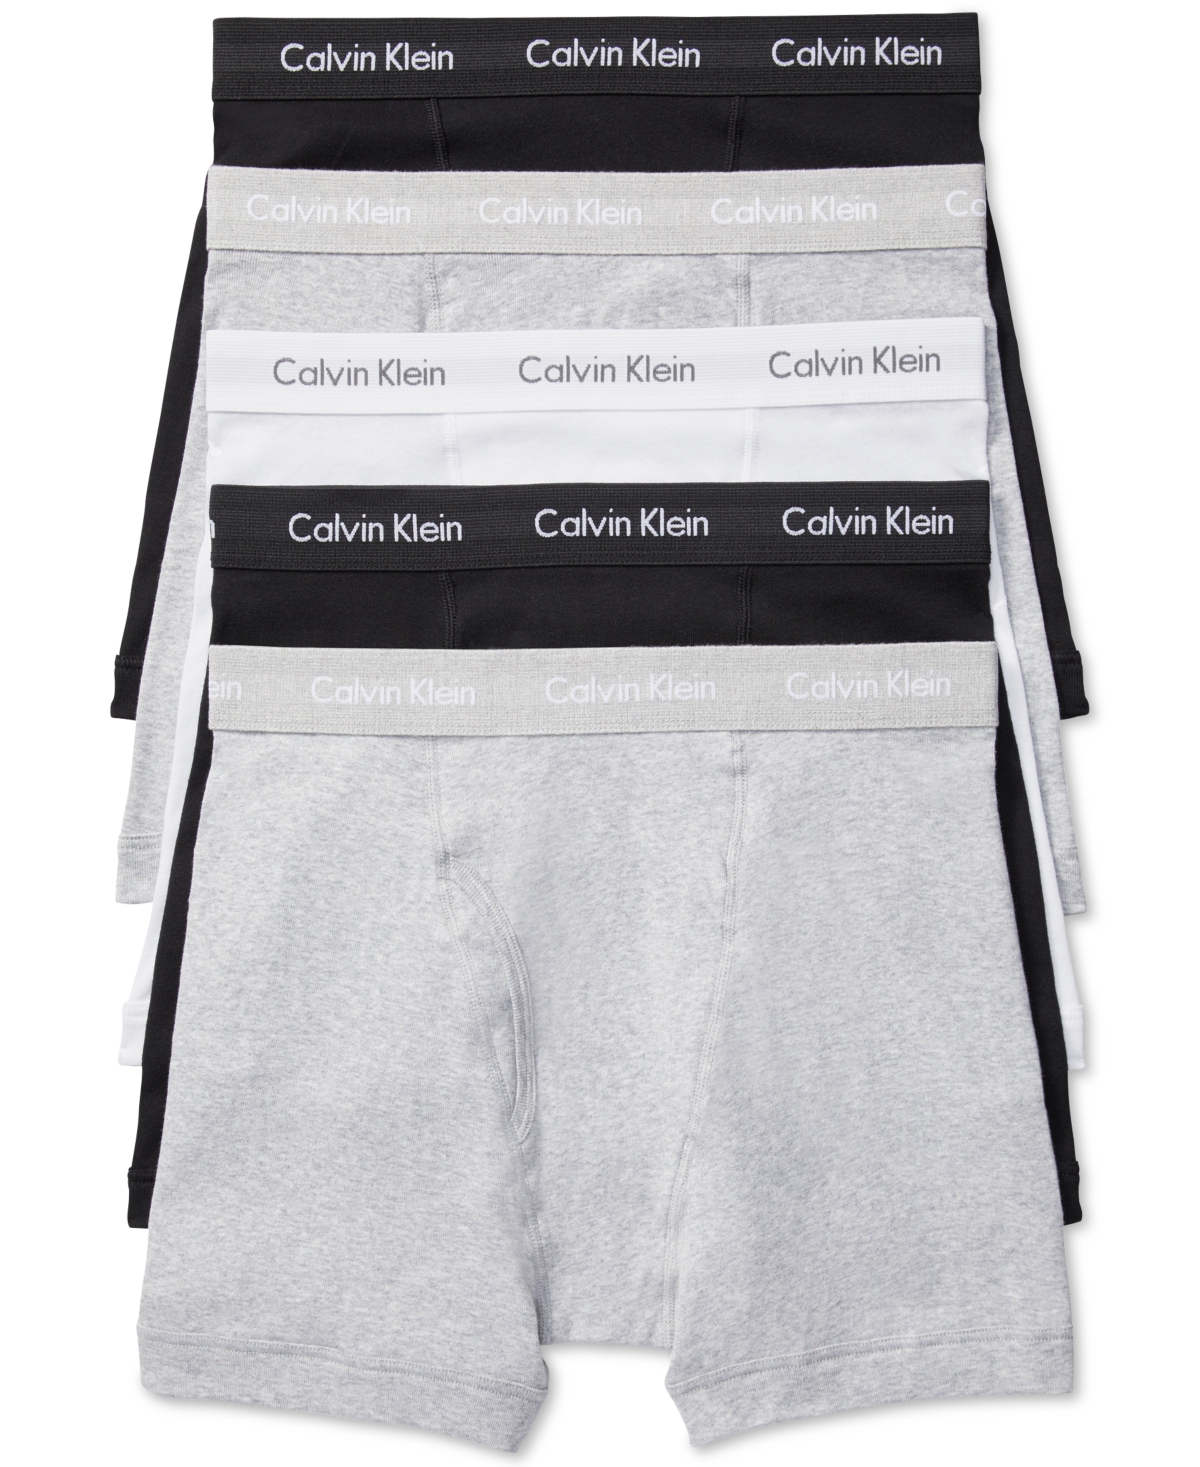 Calvin Klein Men's 5-pack Cotton Classic Boxer Briefs Underwear In White,black Grey